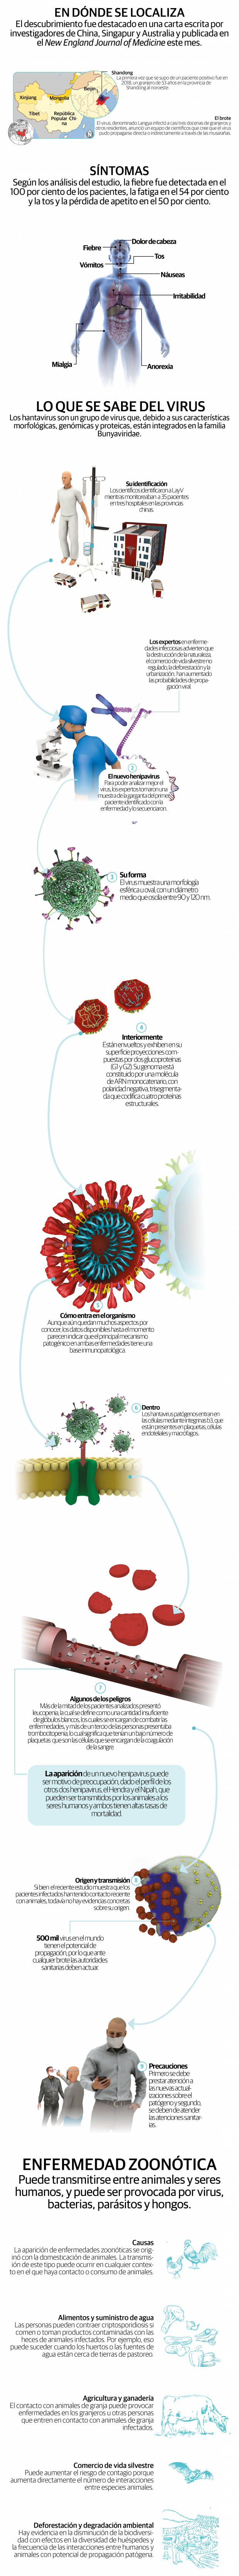 Langya henipavirus, el nuevo virus reportado en China que puede causar síntomas respiratorios como fiebre, tos y fatiga